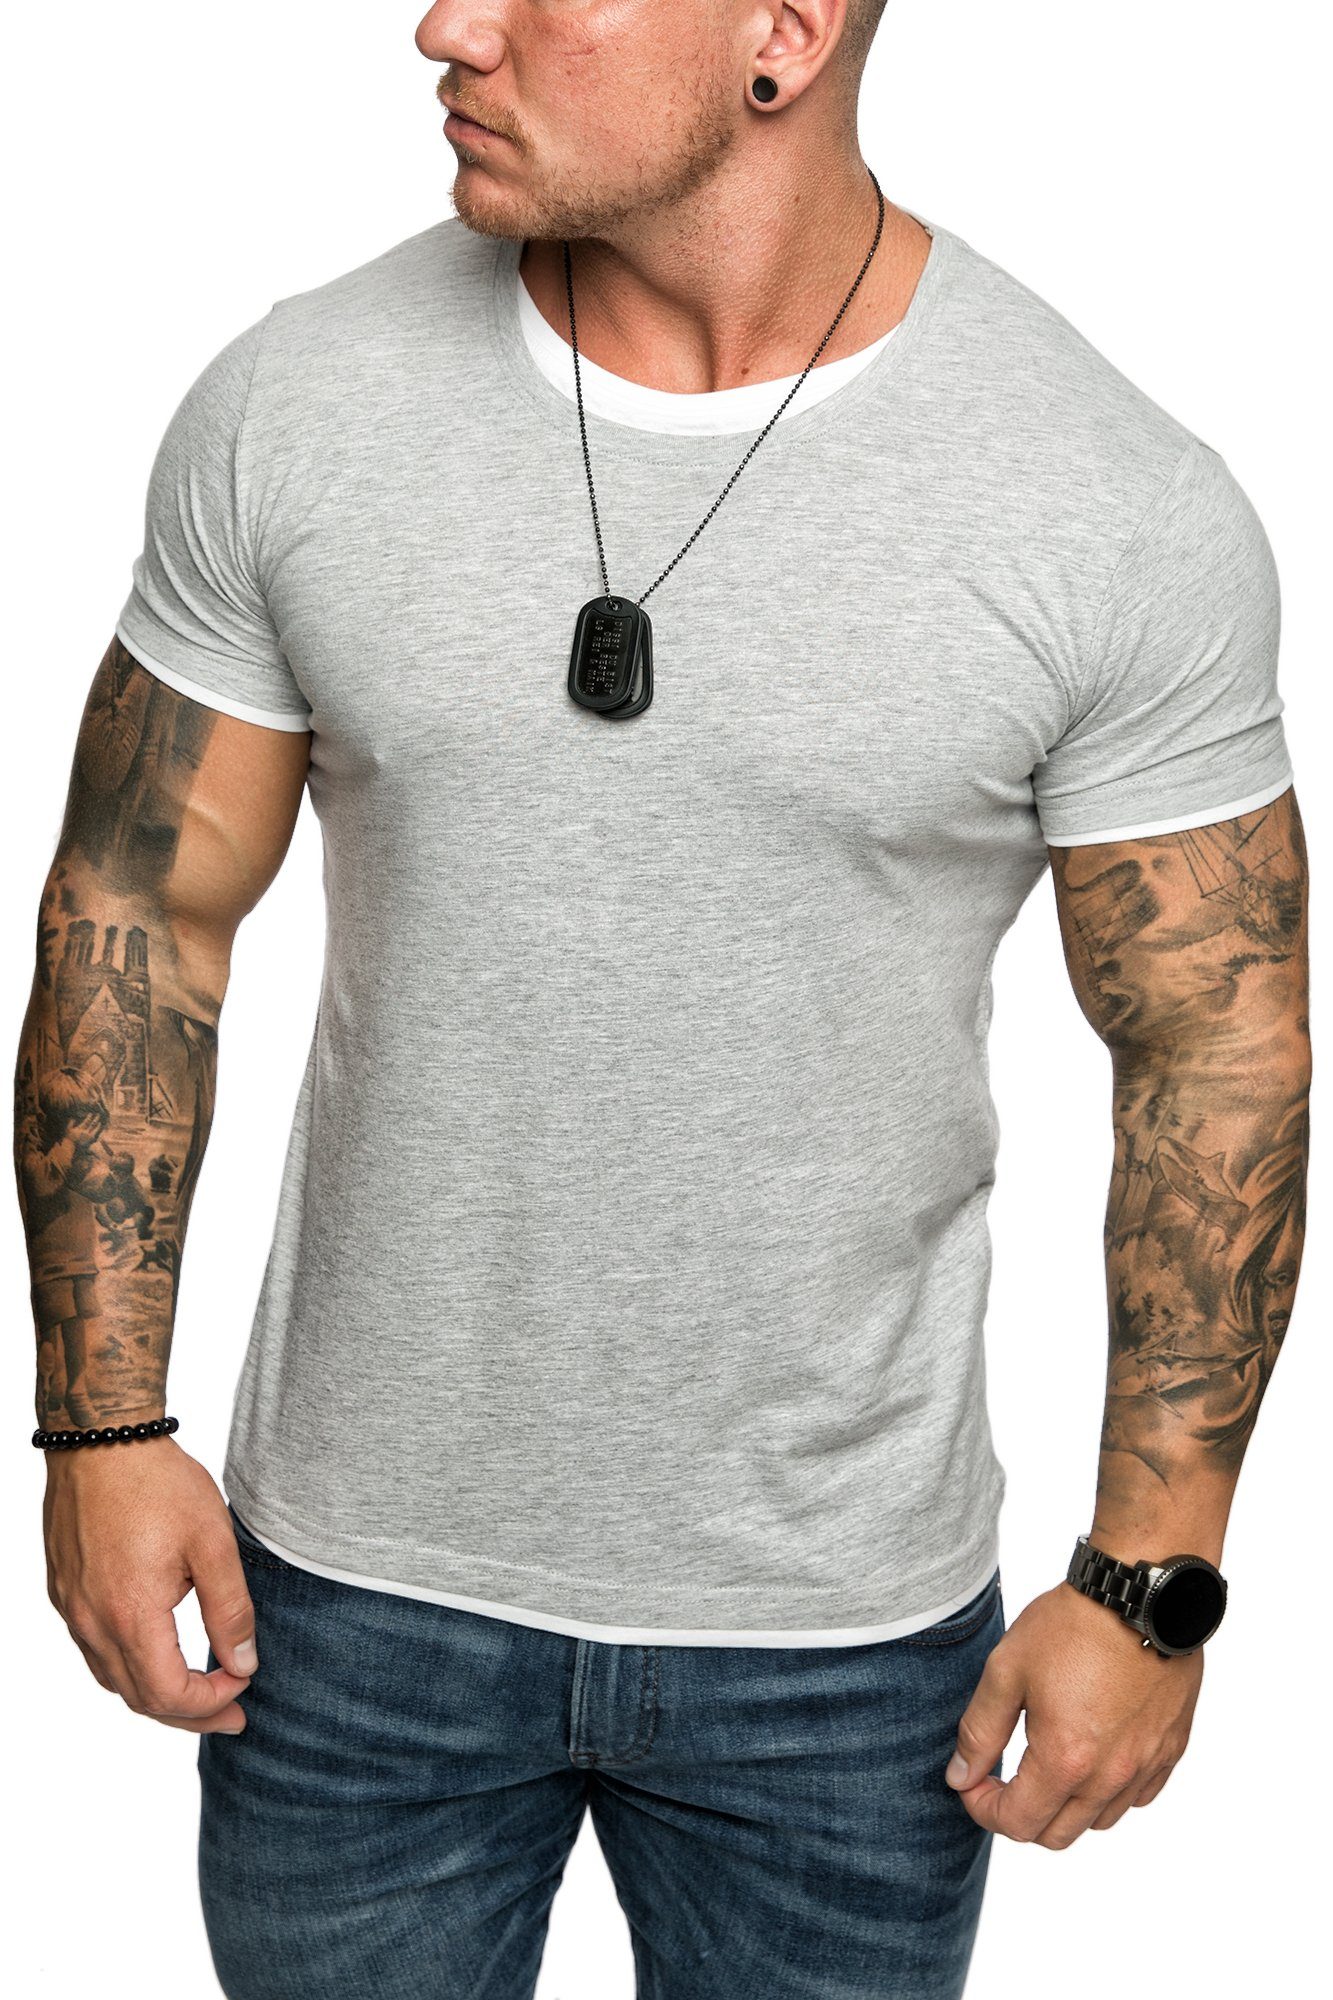 Amaci&Sons T-Shirt LAKEWOOD Herren Basic Grau/Weiß Slim-Fit Doppel Farbig Rundhalsausschnitt mit Shirt